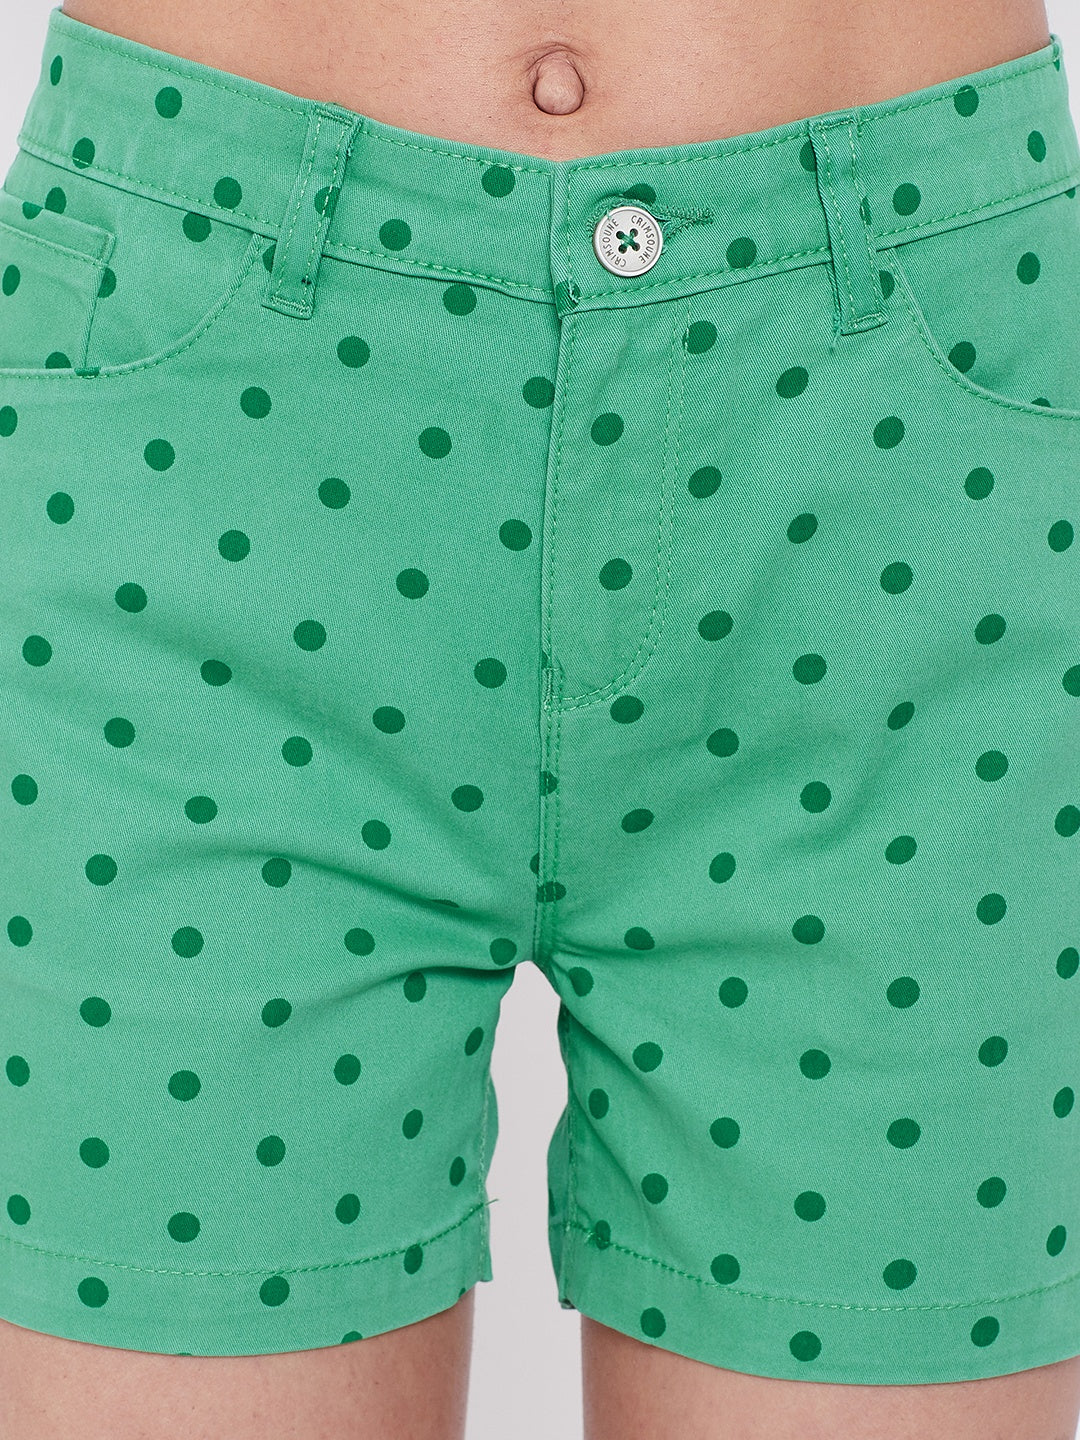 Green Polka Dot Shorts - Women Shorts